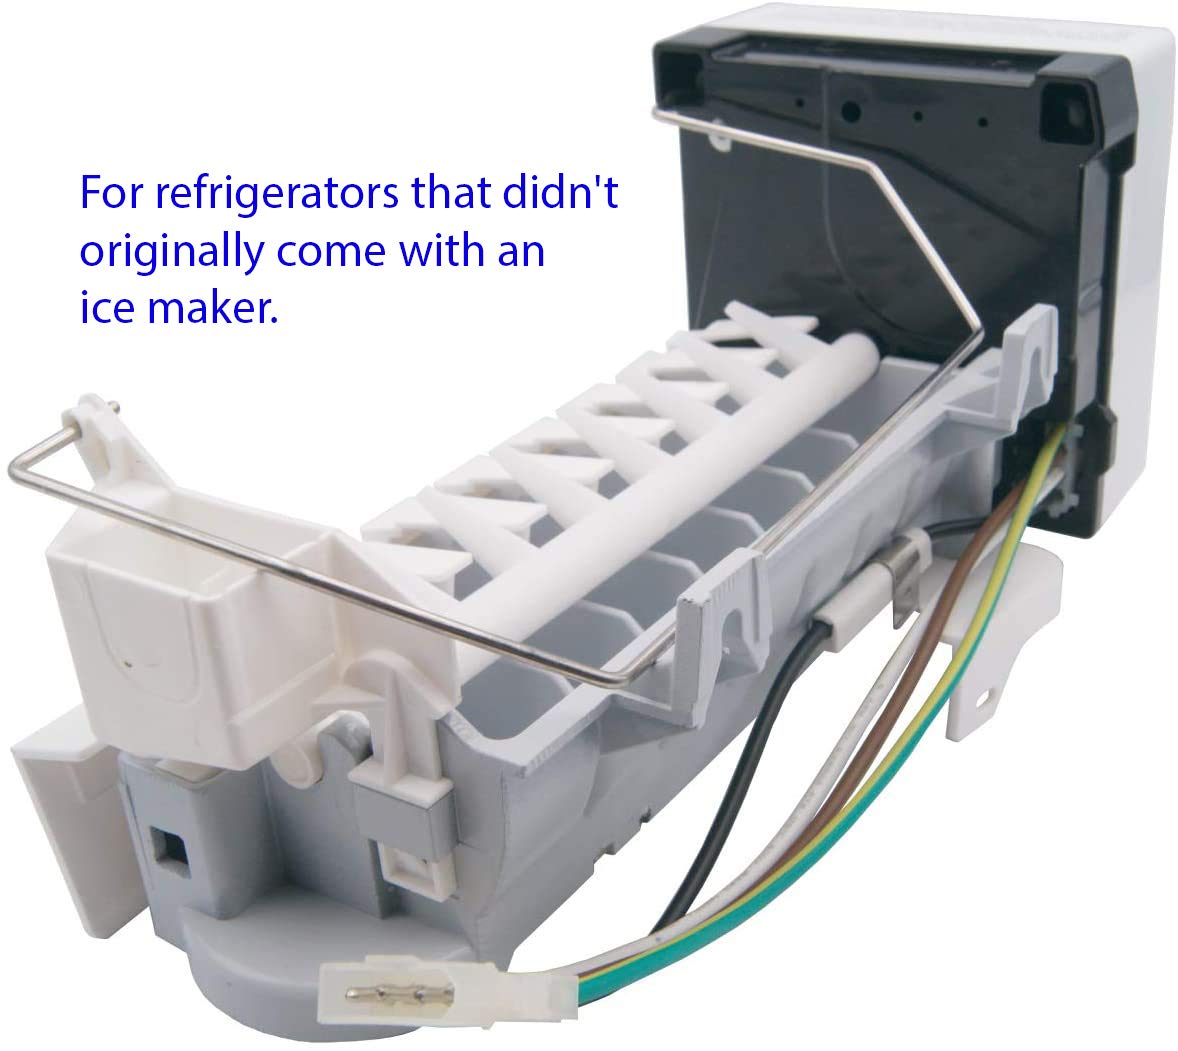 W10715708  Refrigerator Ice Maker Assembly Add-on Kit